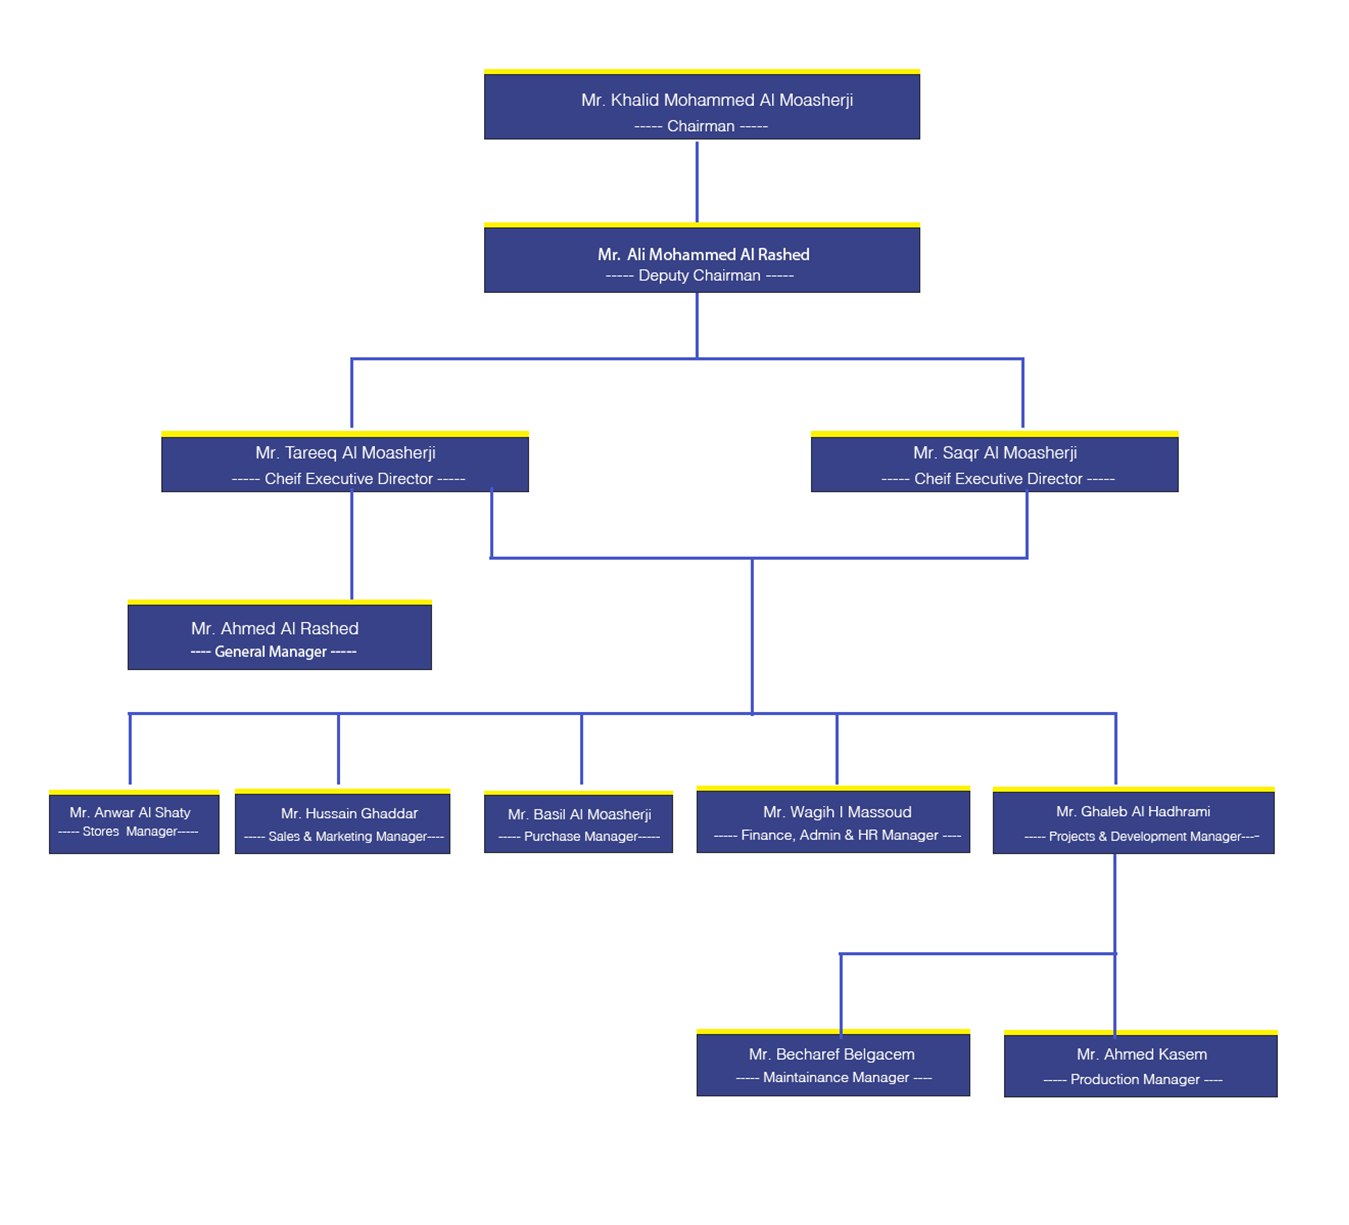 Production Organization Chart